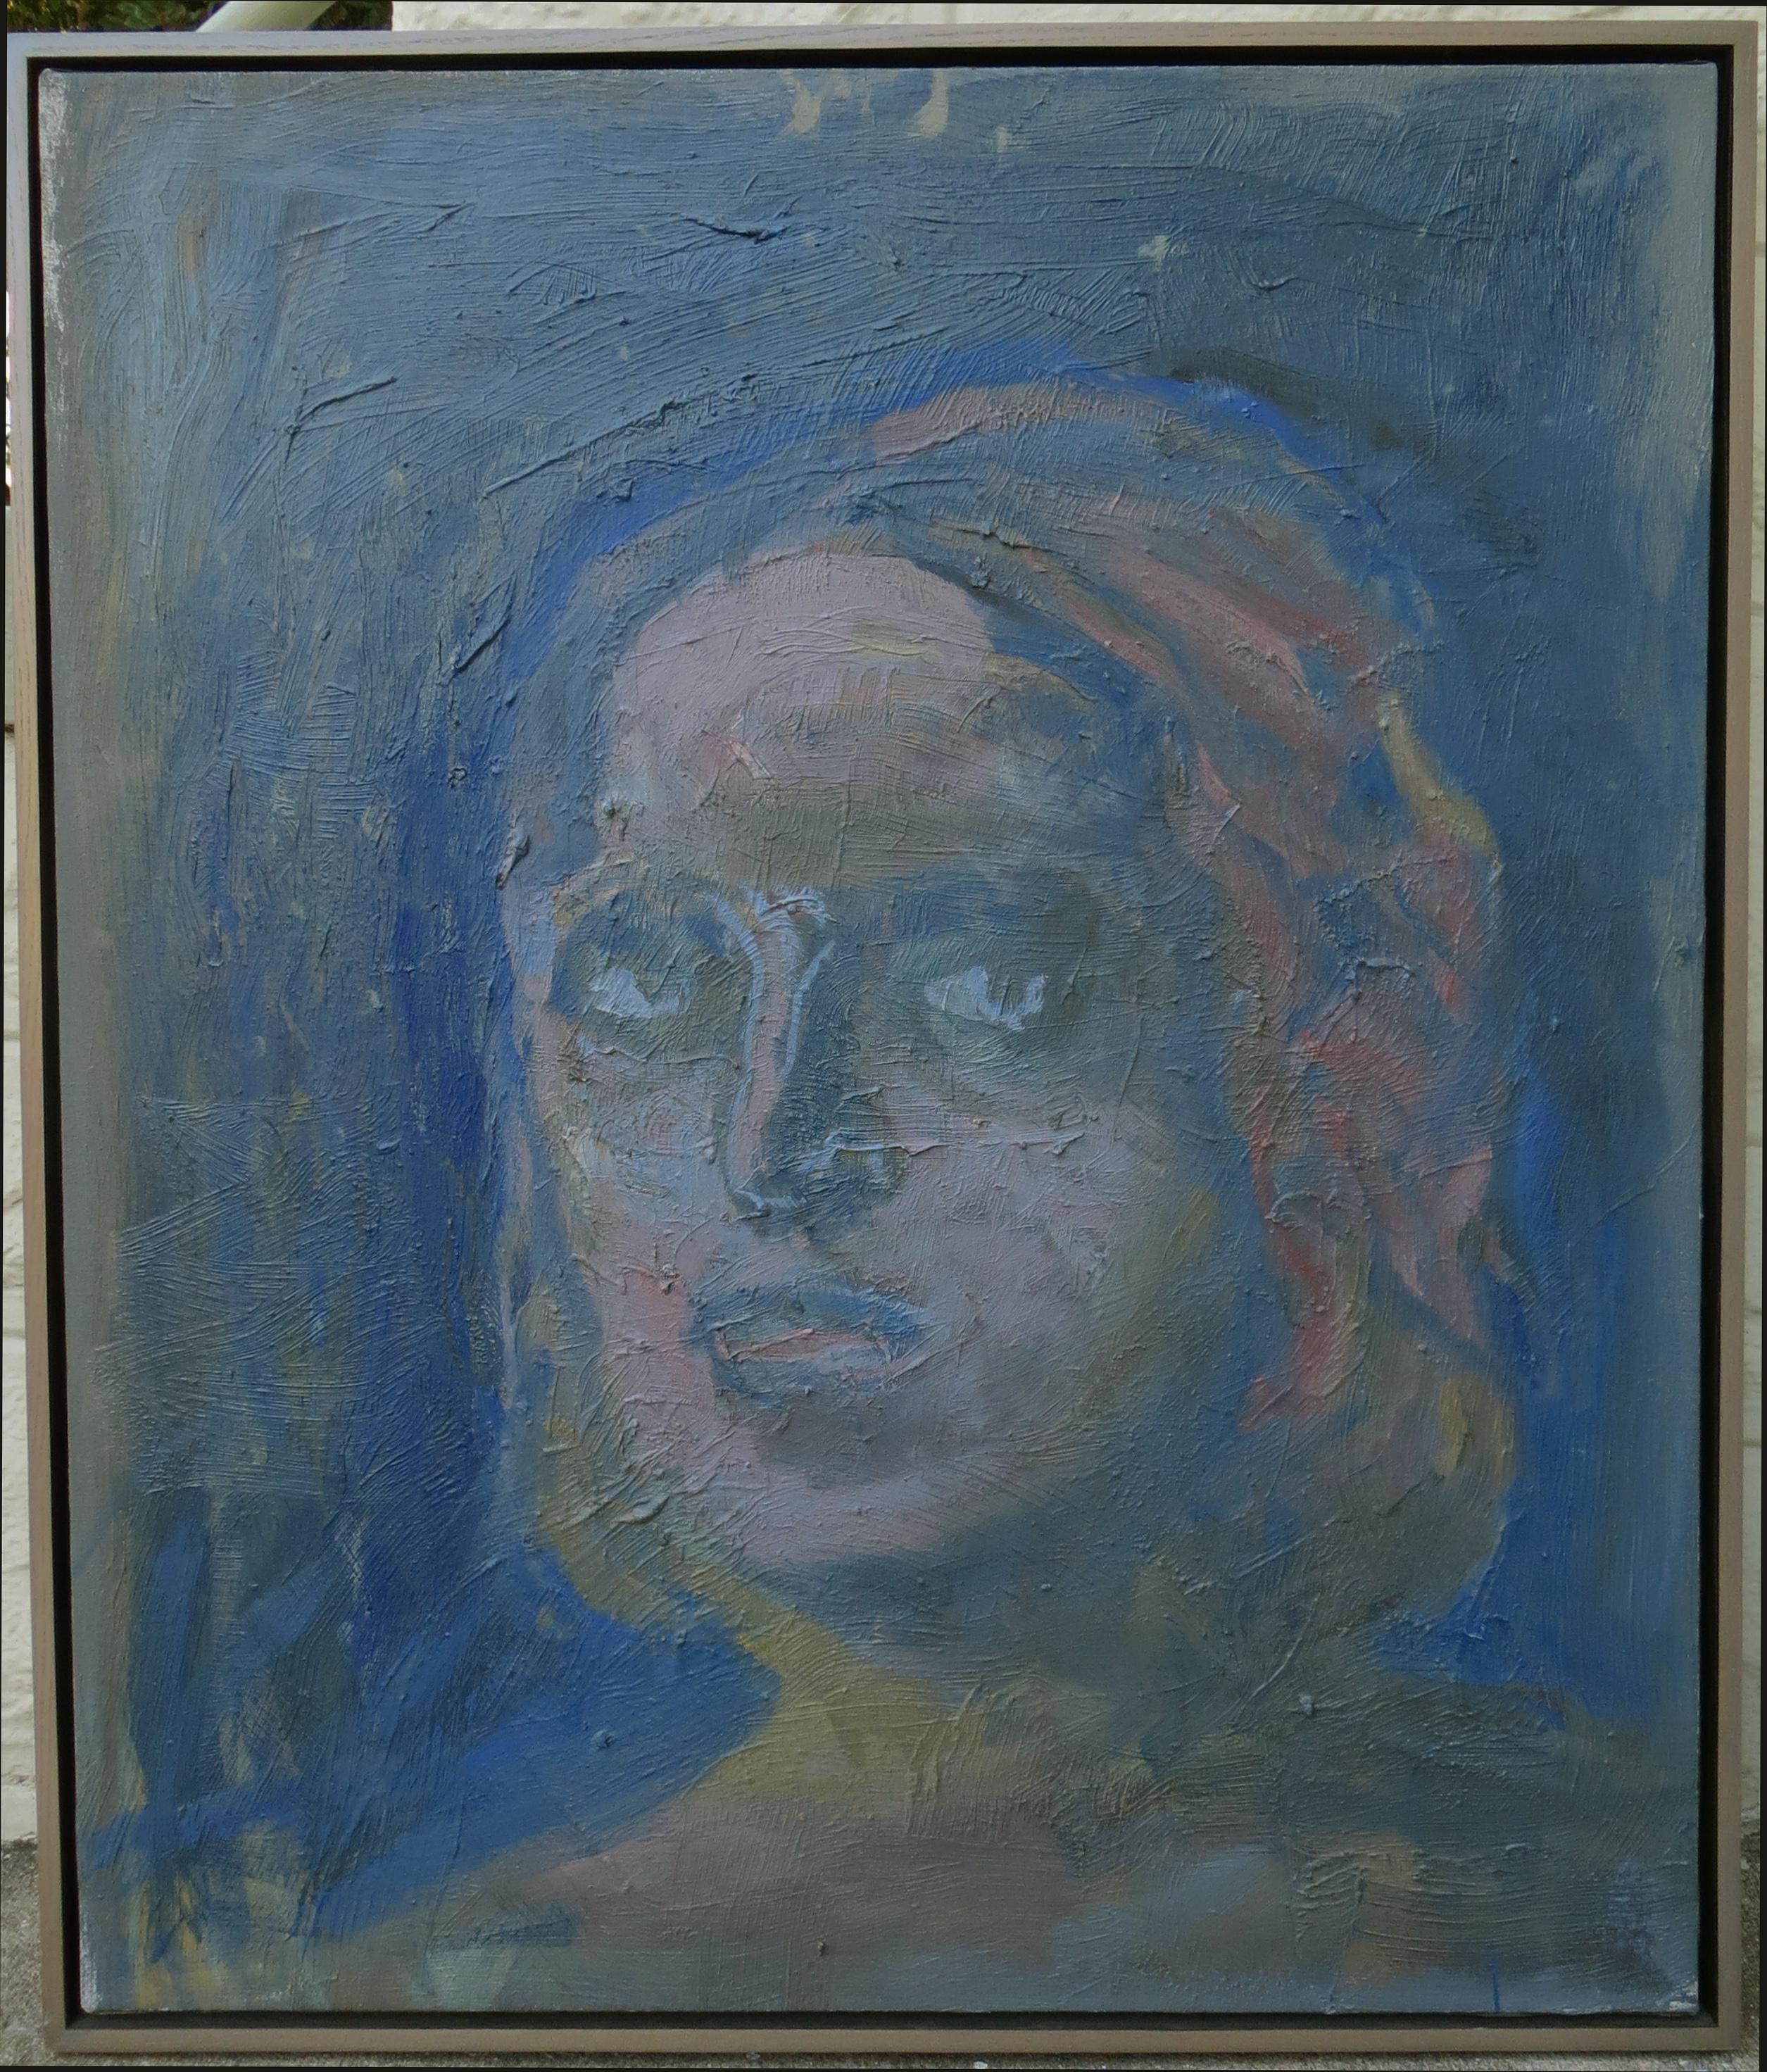 Dieses ausdrucksstarke, figurative Porträt stammt von Cliffton Peacock (1953-). Das Gemälde misst 40 x 34 Zoll (42 x 36 Zoll gerahmt.) Es besteht aus Öl auf Leinwand. Das Gemälde ist auf der Rückseite signiert und datiert (1991). Außerdem befindet